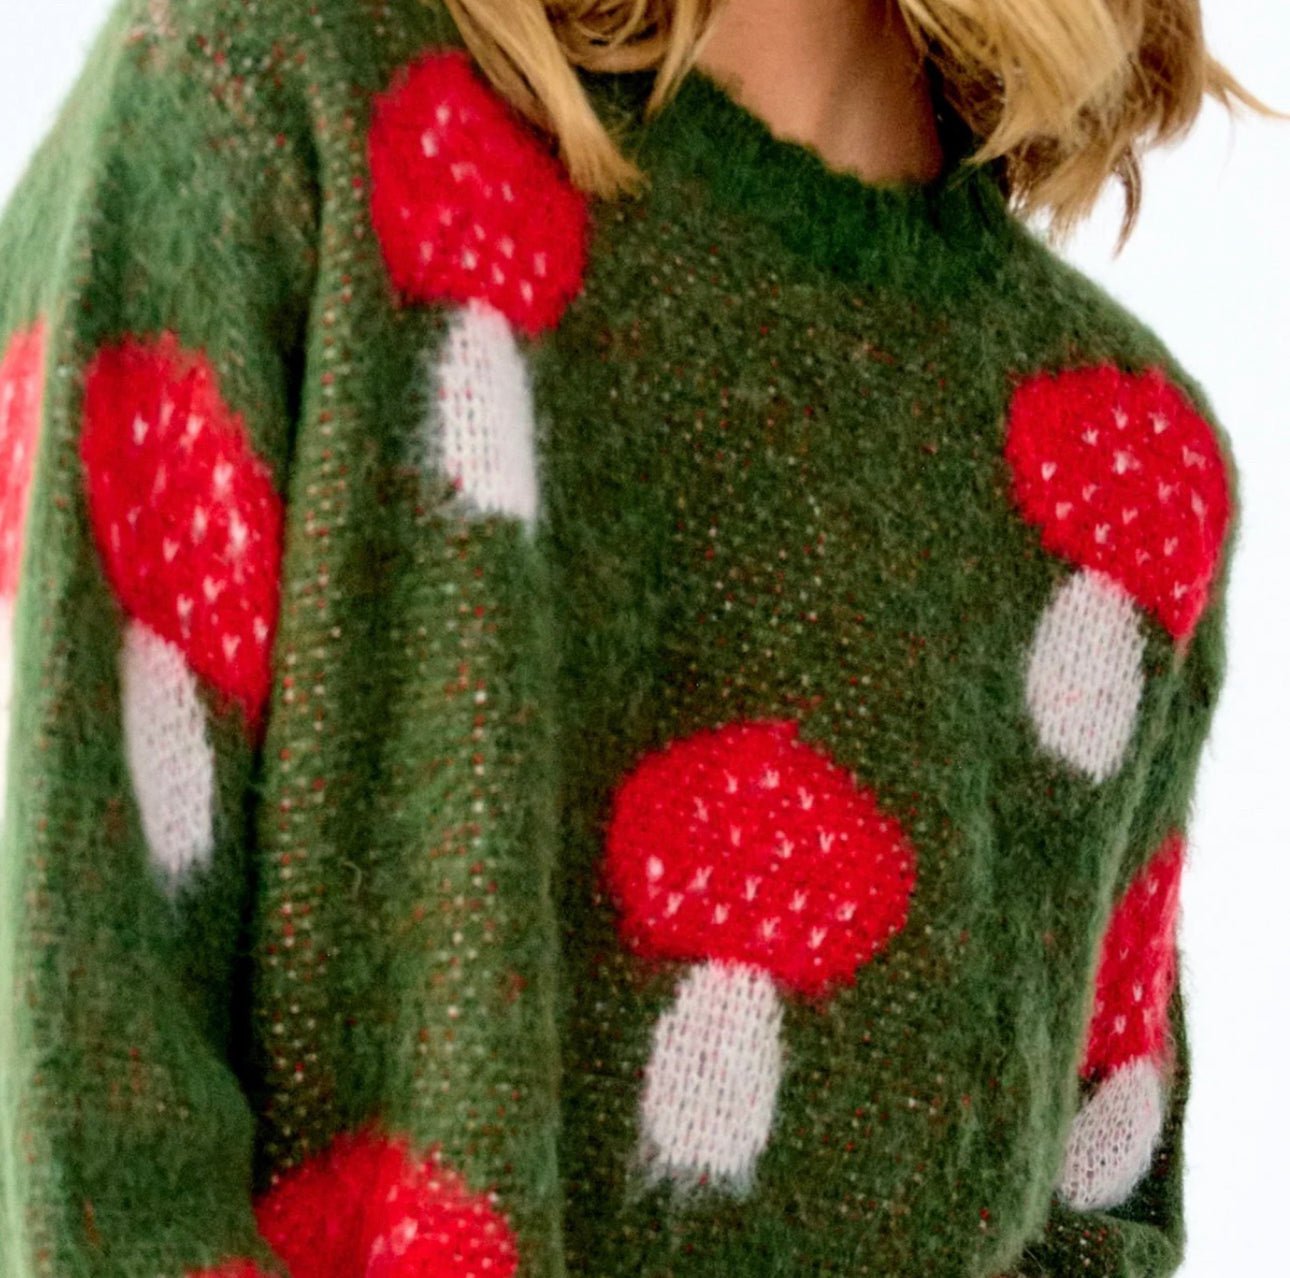 Noella - Lena Knit sweater - Mushroom - Merle og Wilde